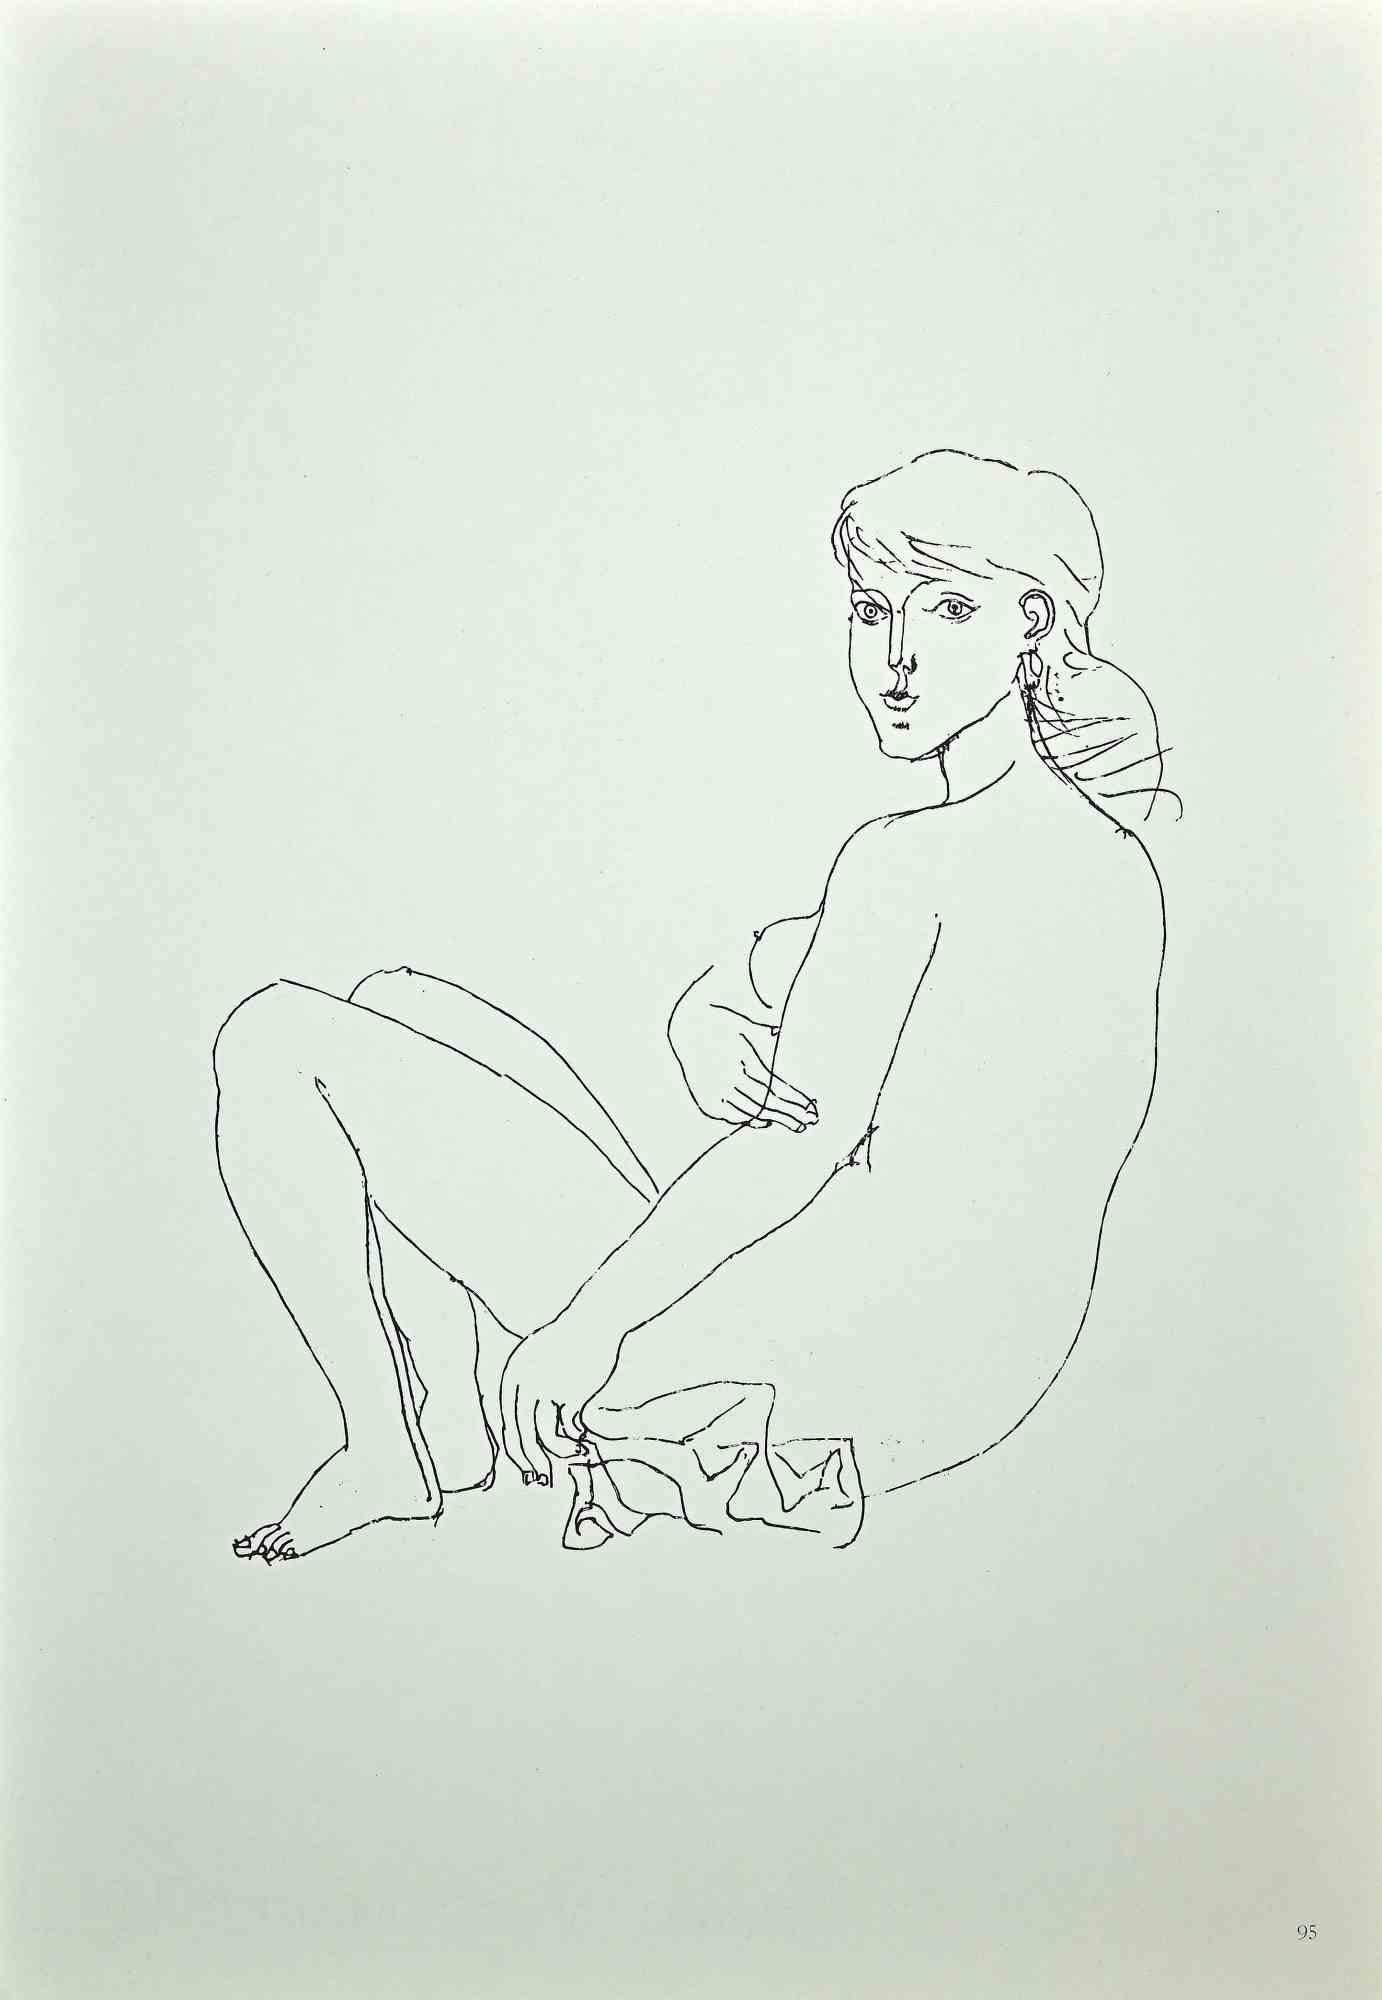 Femme nue est une impression offset vintage originale sur papier de couleur ivoire, réalisée par  Franco Gentilini ( peintre italien, 1909-1981), dans les années 1970.

L'état de conservation des œuvres d'art est excellent.

Franco Gentilini (